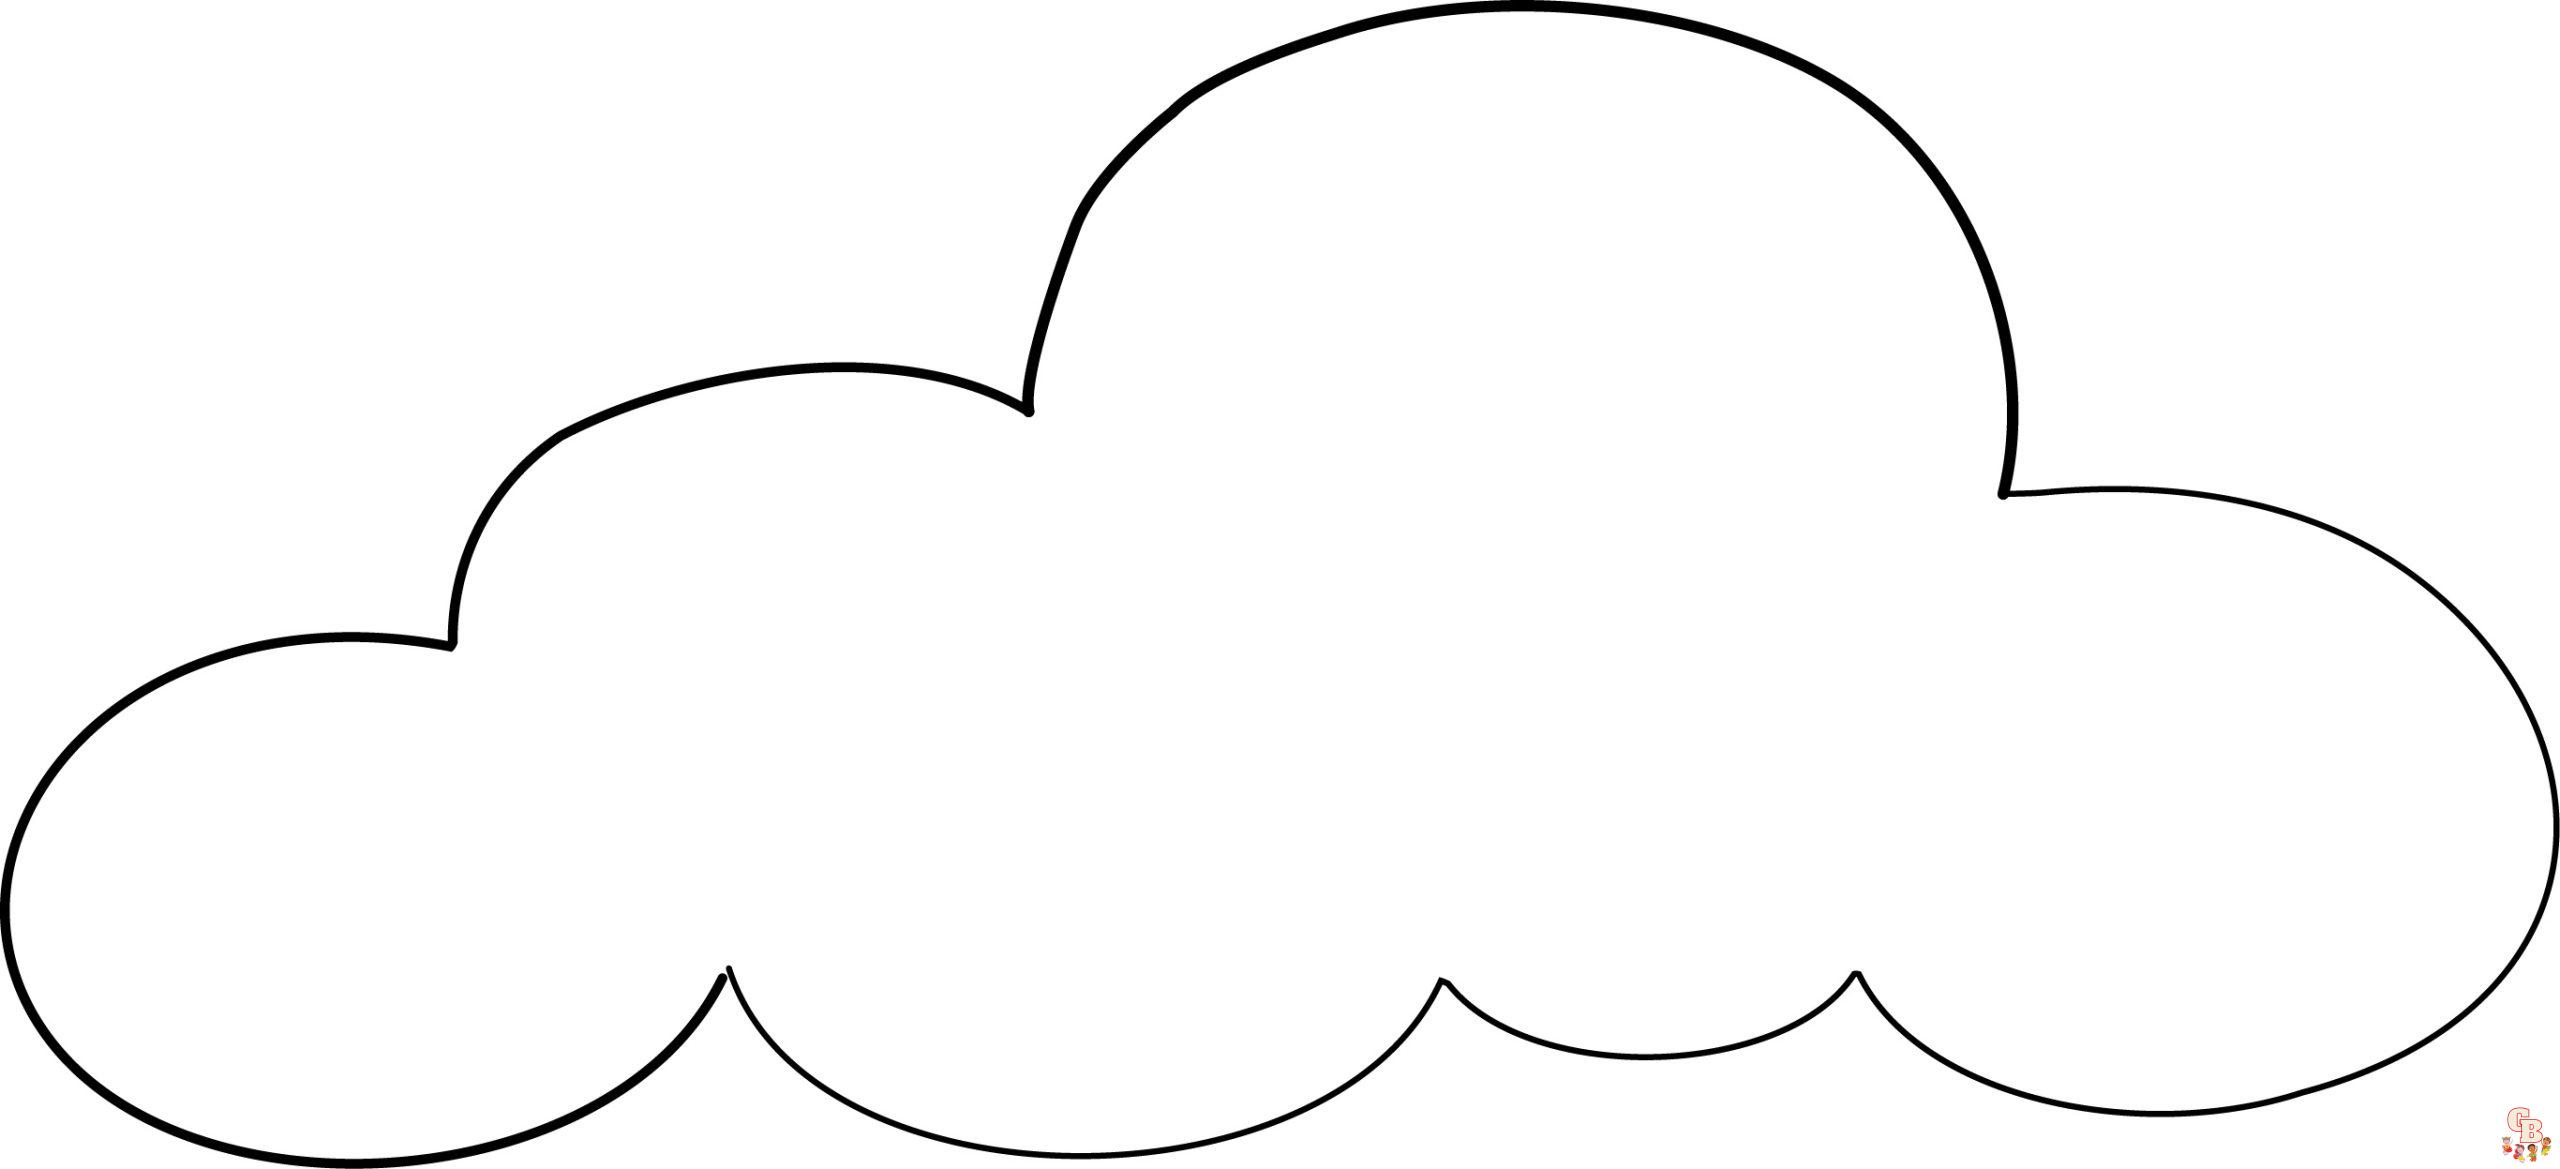 Подборка картинок разложенных по категориям облако